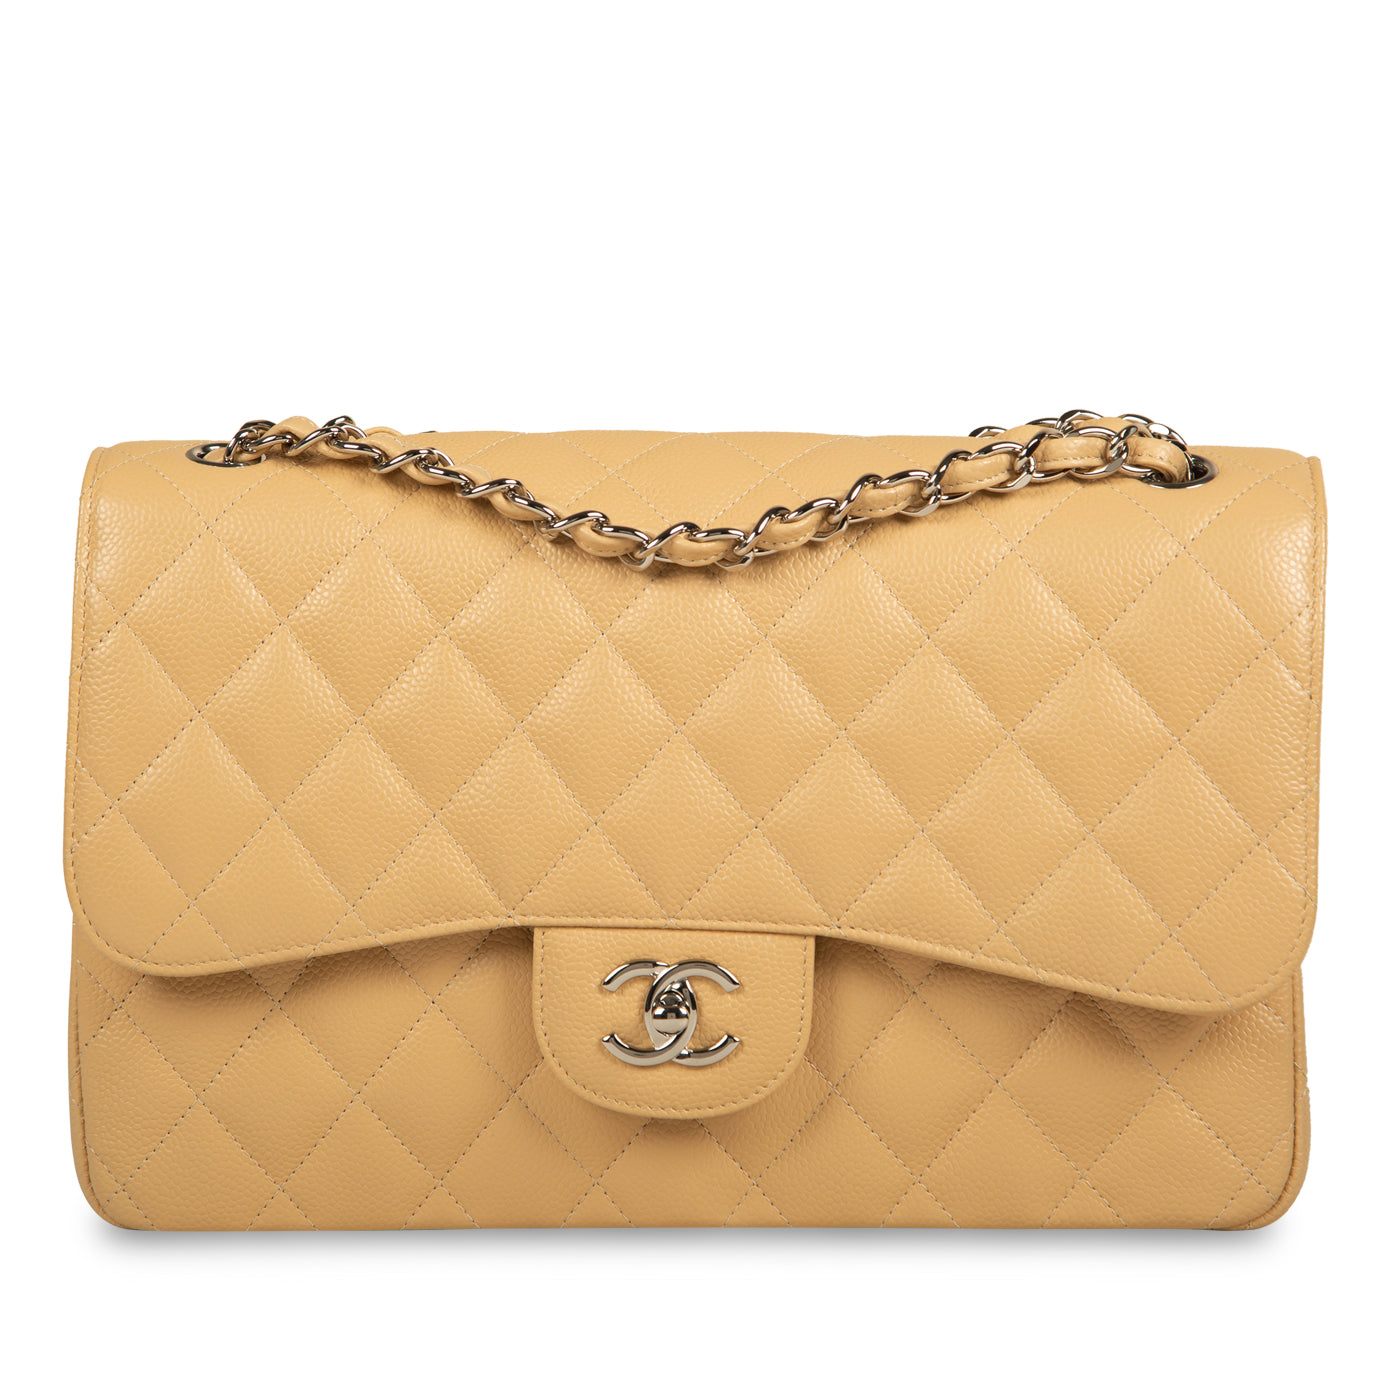 Chanel - Classic Flap Bag - Jumbo - Beige Caviar - SHW - Full Set